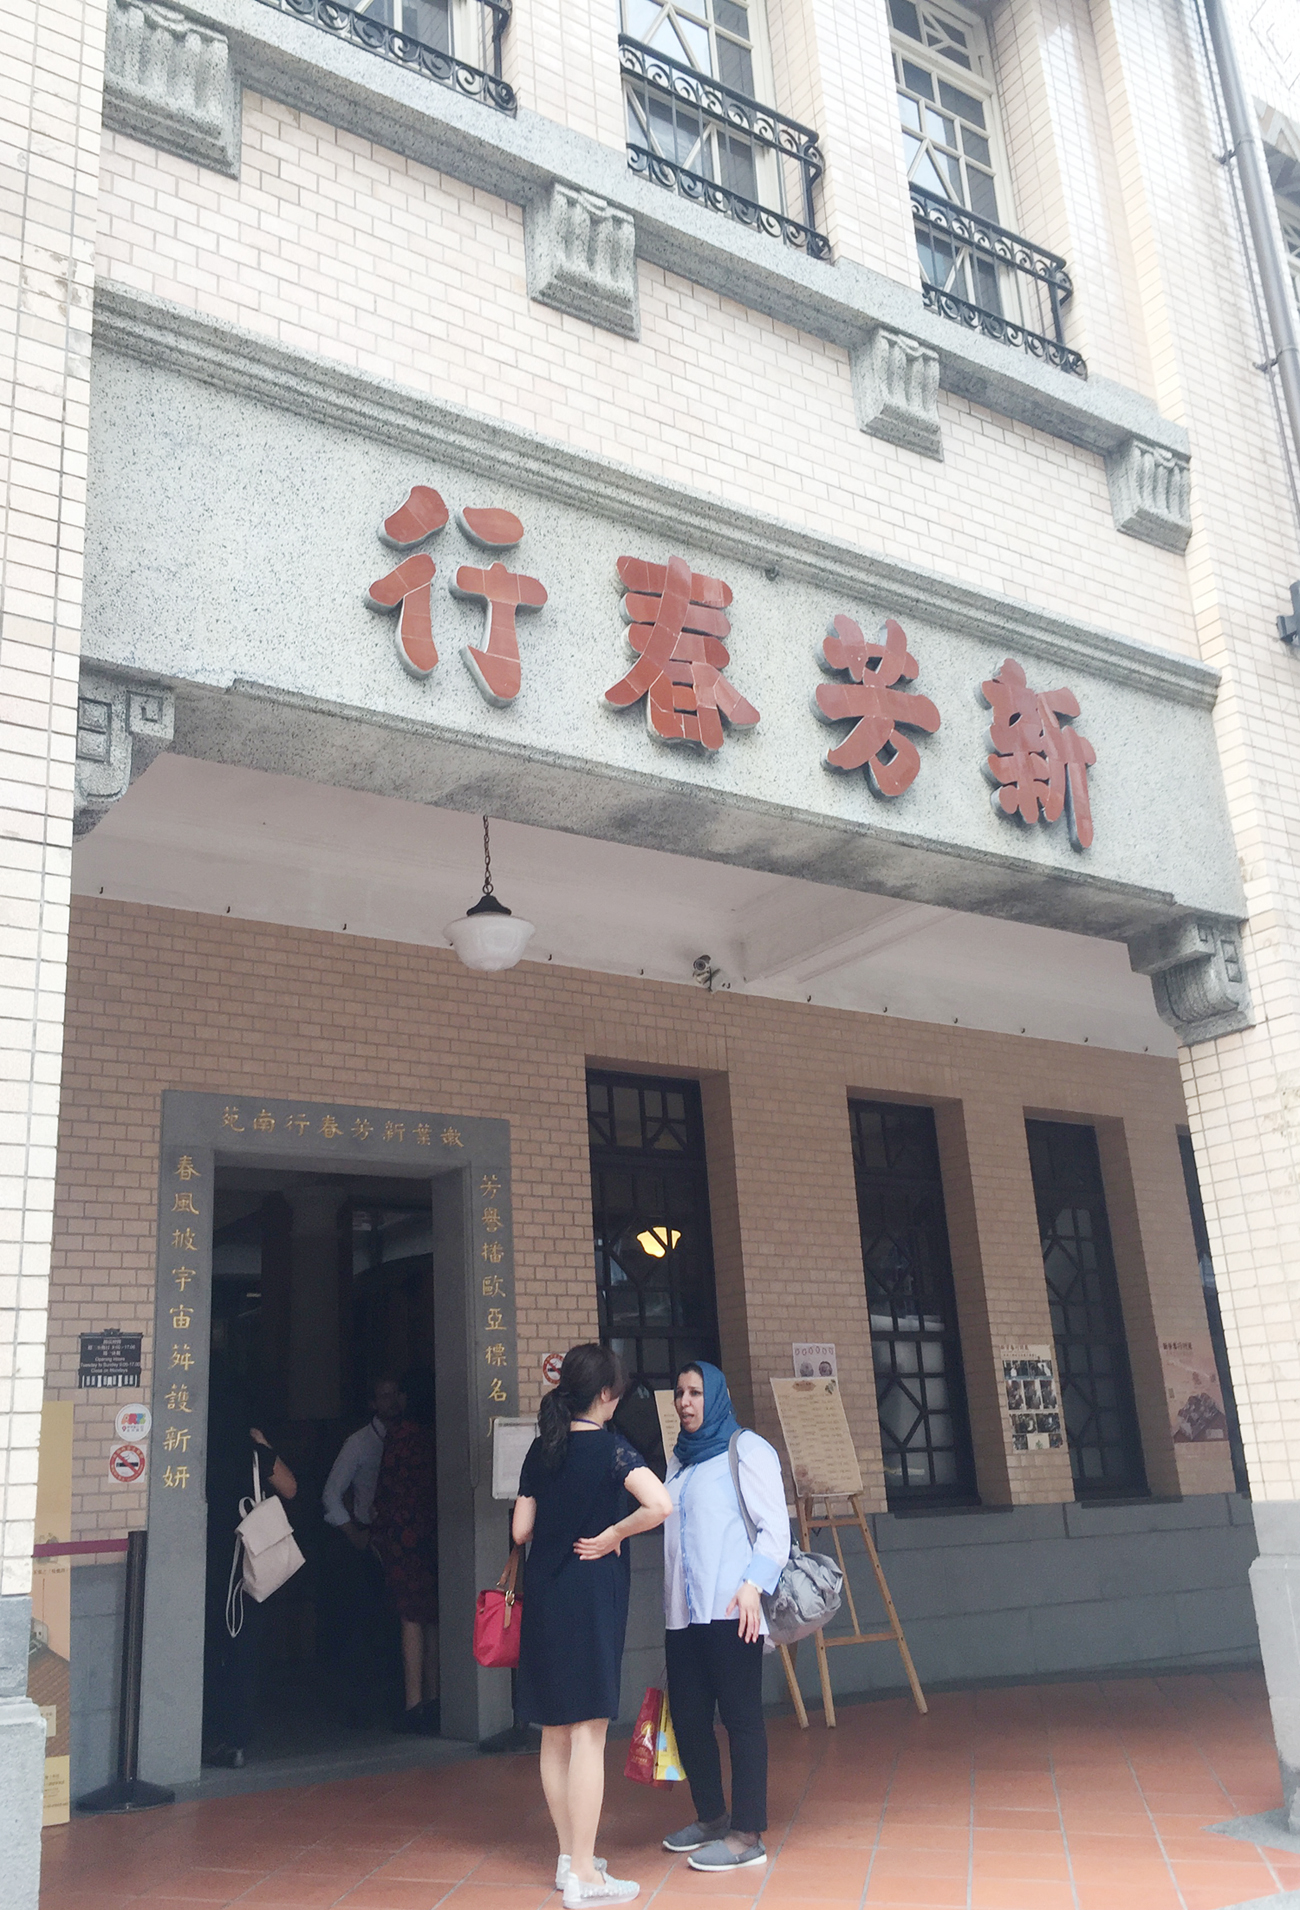 Công ty Trà Sin Hong Choon nằm trên con phố sầm uất Minsheng West, ở Datong, Taipe. Công ty được thành lập năm 1934 bởi ông Wang Lianhe.  Trước đó, tổ tiên nhà họ  Wang ở Phúc Kiến di chuyển đến đây sinh sống. Wang Lianhe là người đã nỗ lực đưa công ty trở nên thịnh vượng, dẫn đầu trong ngành thương mại trà cho đến tận khi ông qua đời năm 1975. 